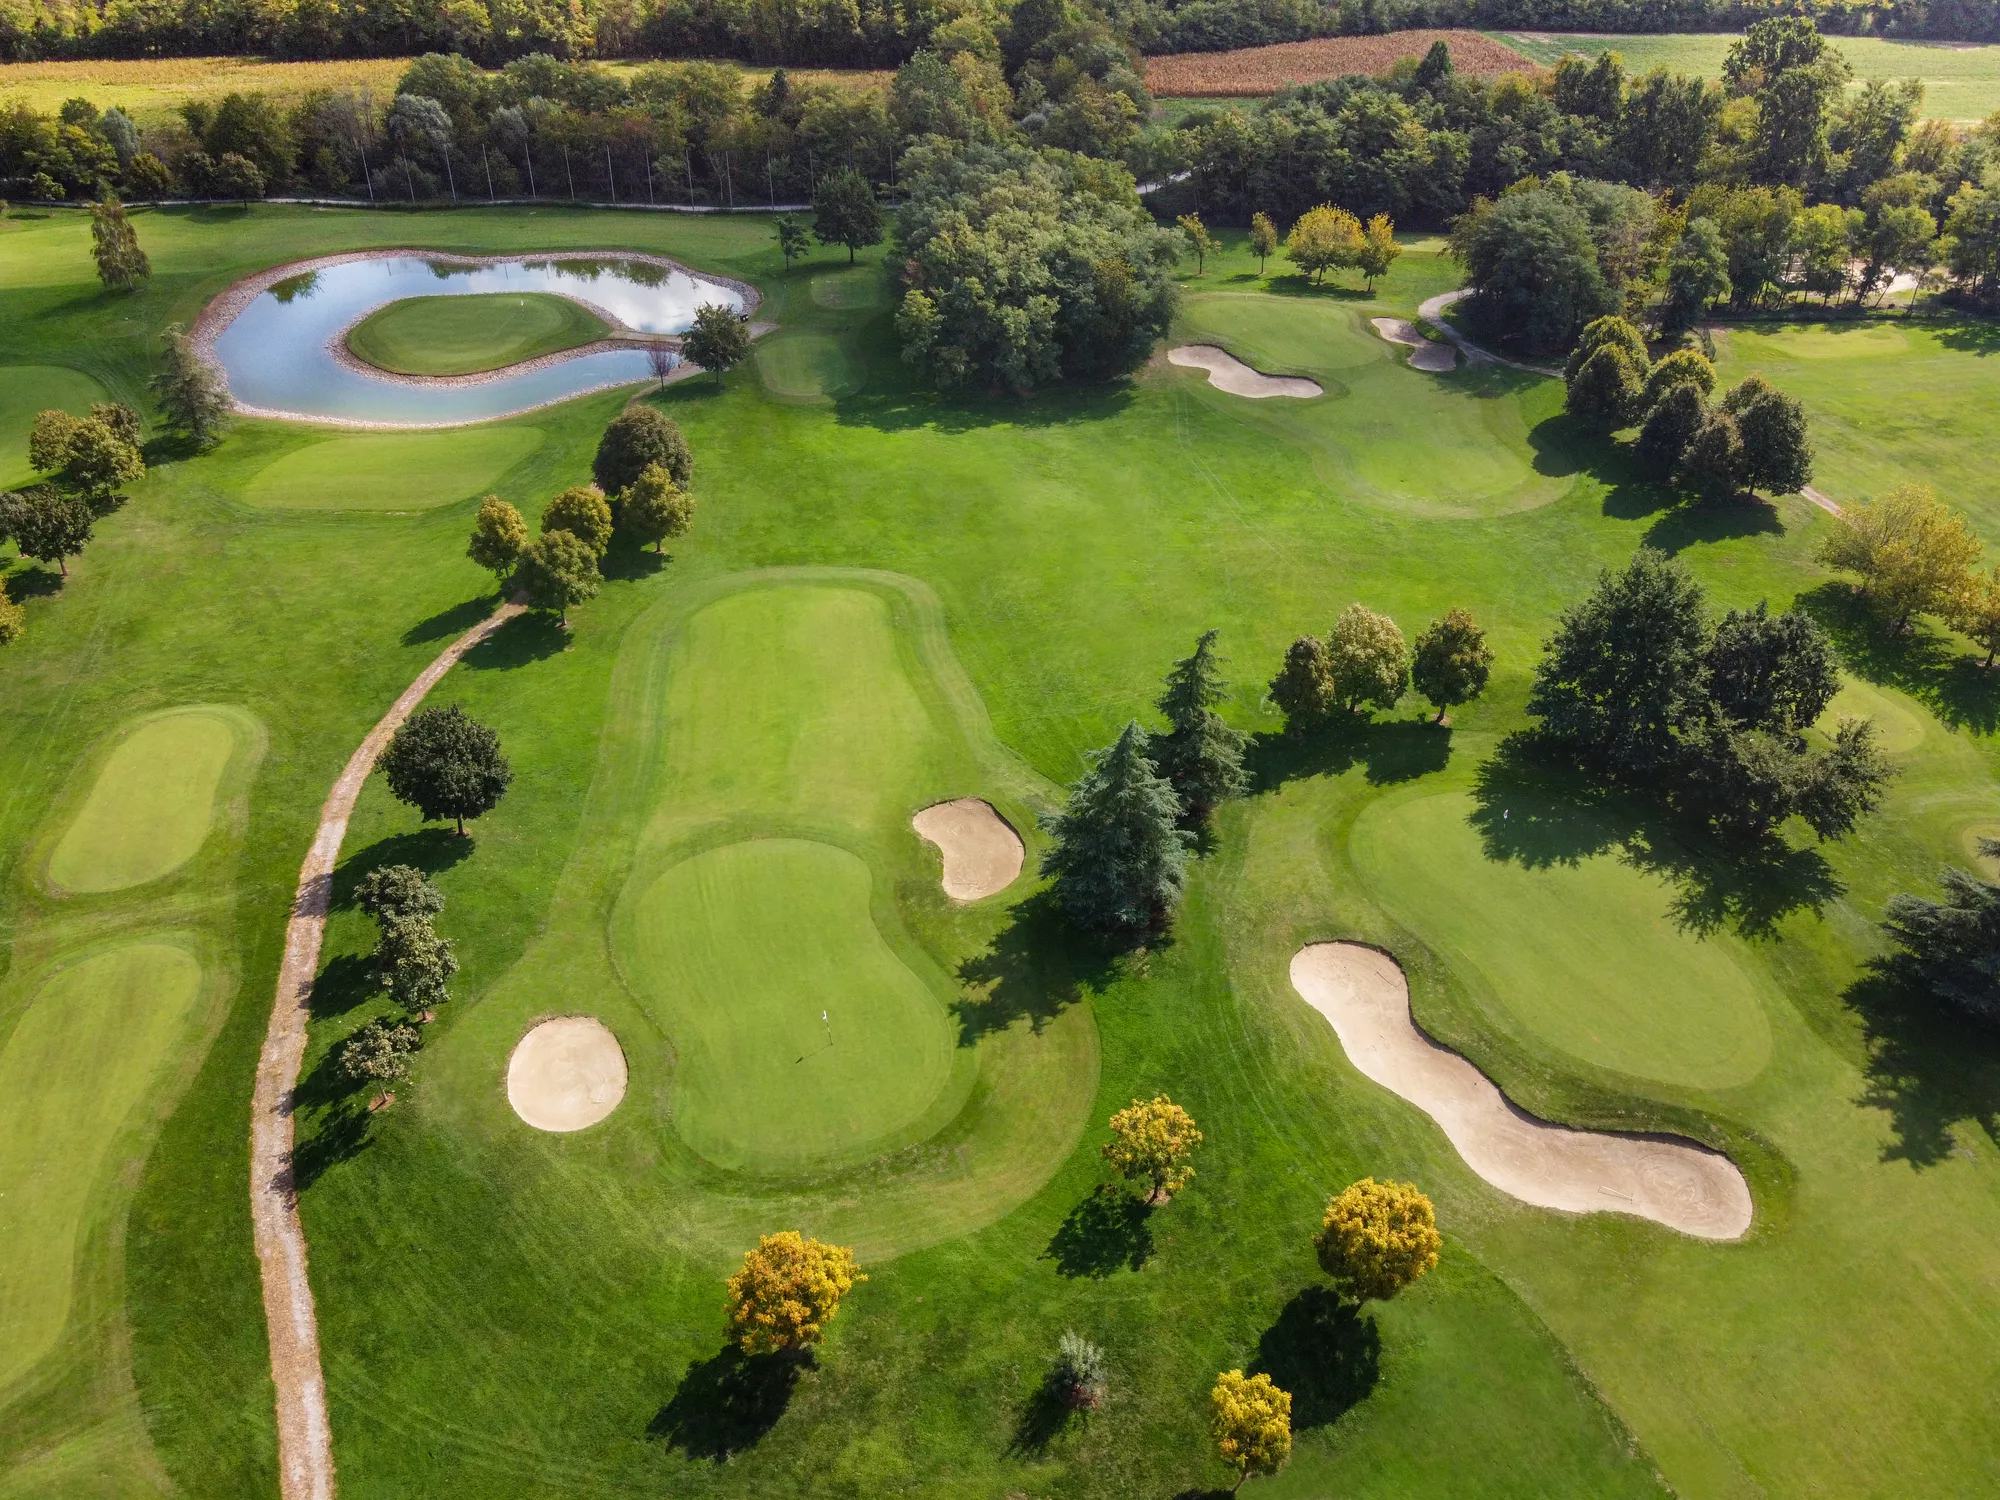 golfbaan vanuit de lucht gefotografeerd